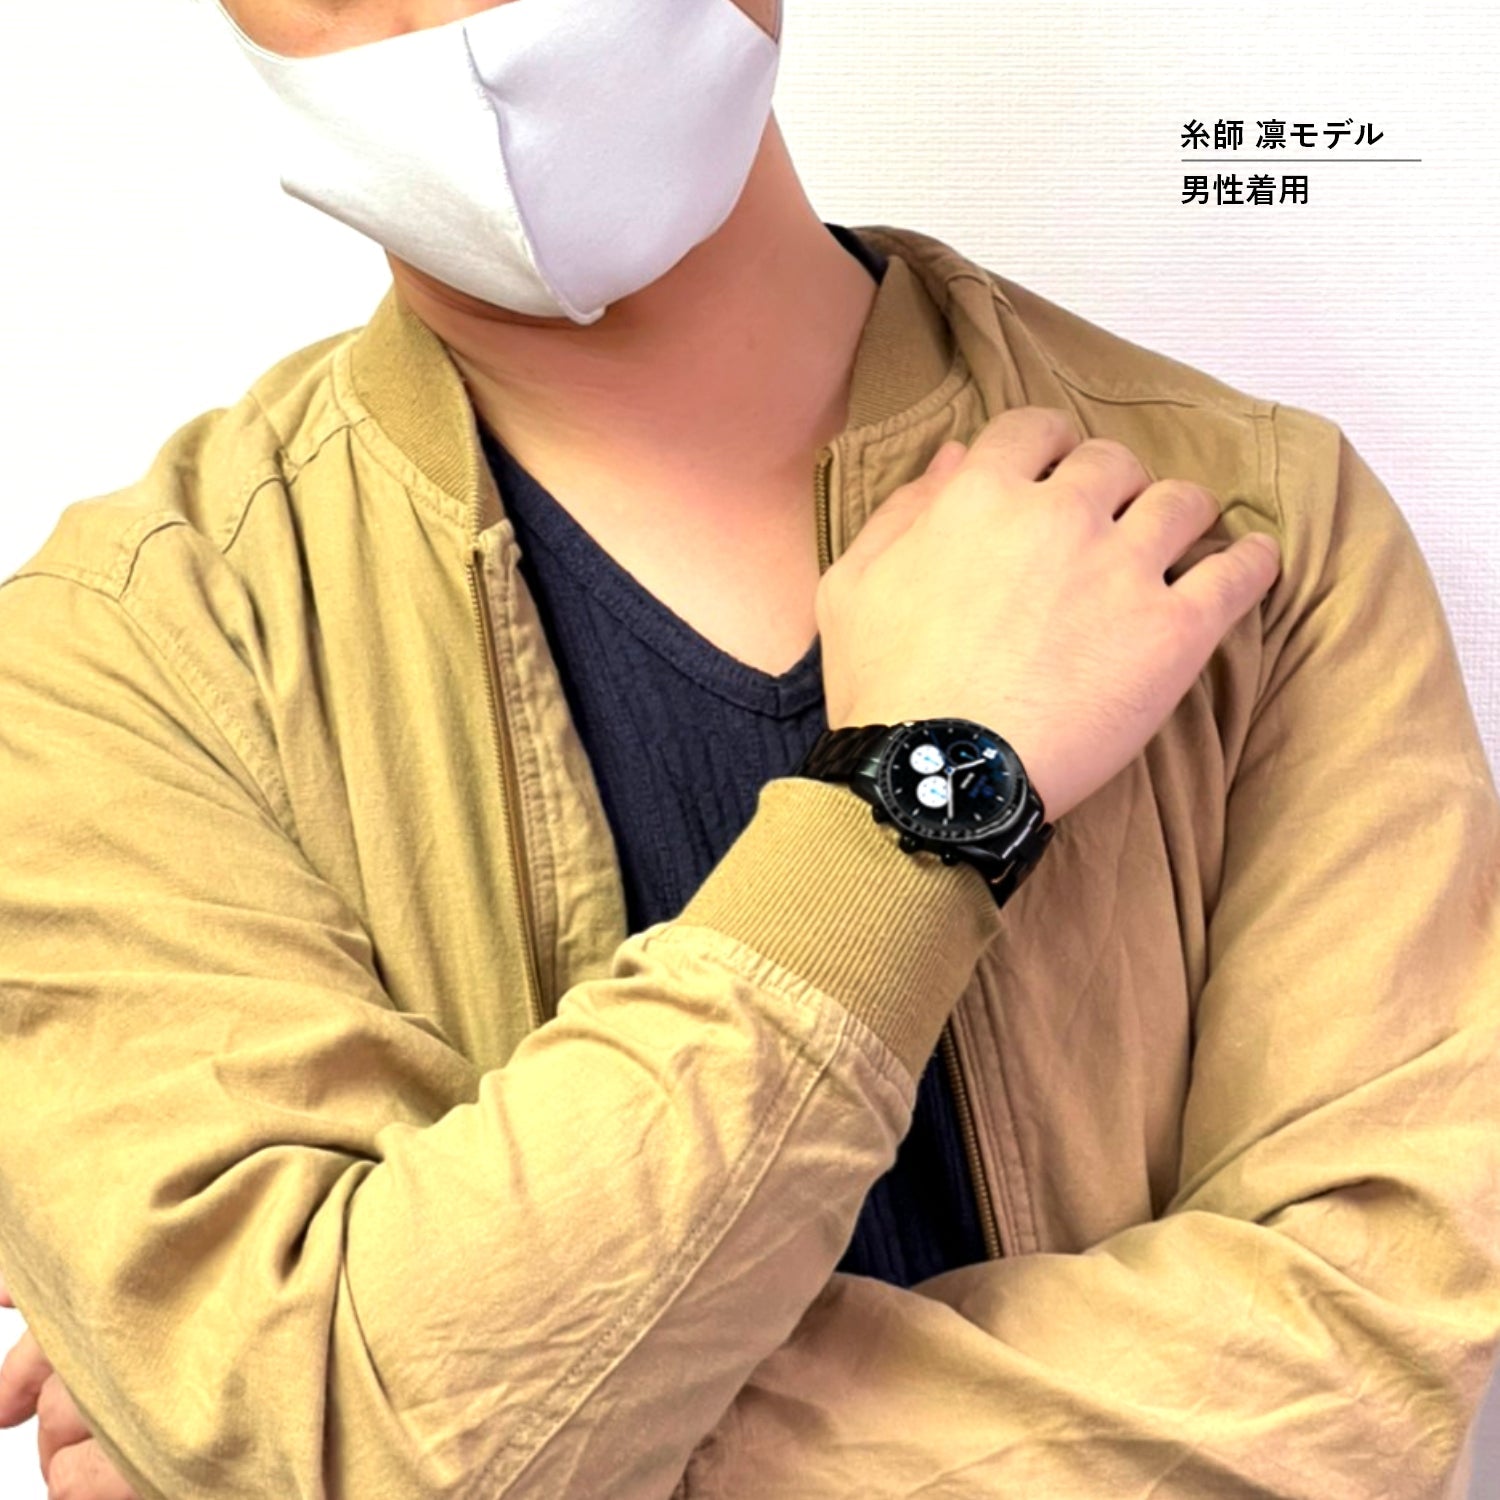 テレビアニメ「ブルーロック」オフィシャルクロノグラフ腕時計 蜂楽 廻 - 公式通販サイト「アニメコレクション/Anime Collection」